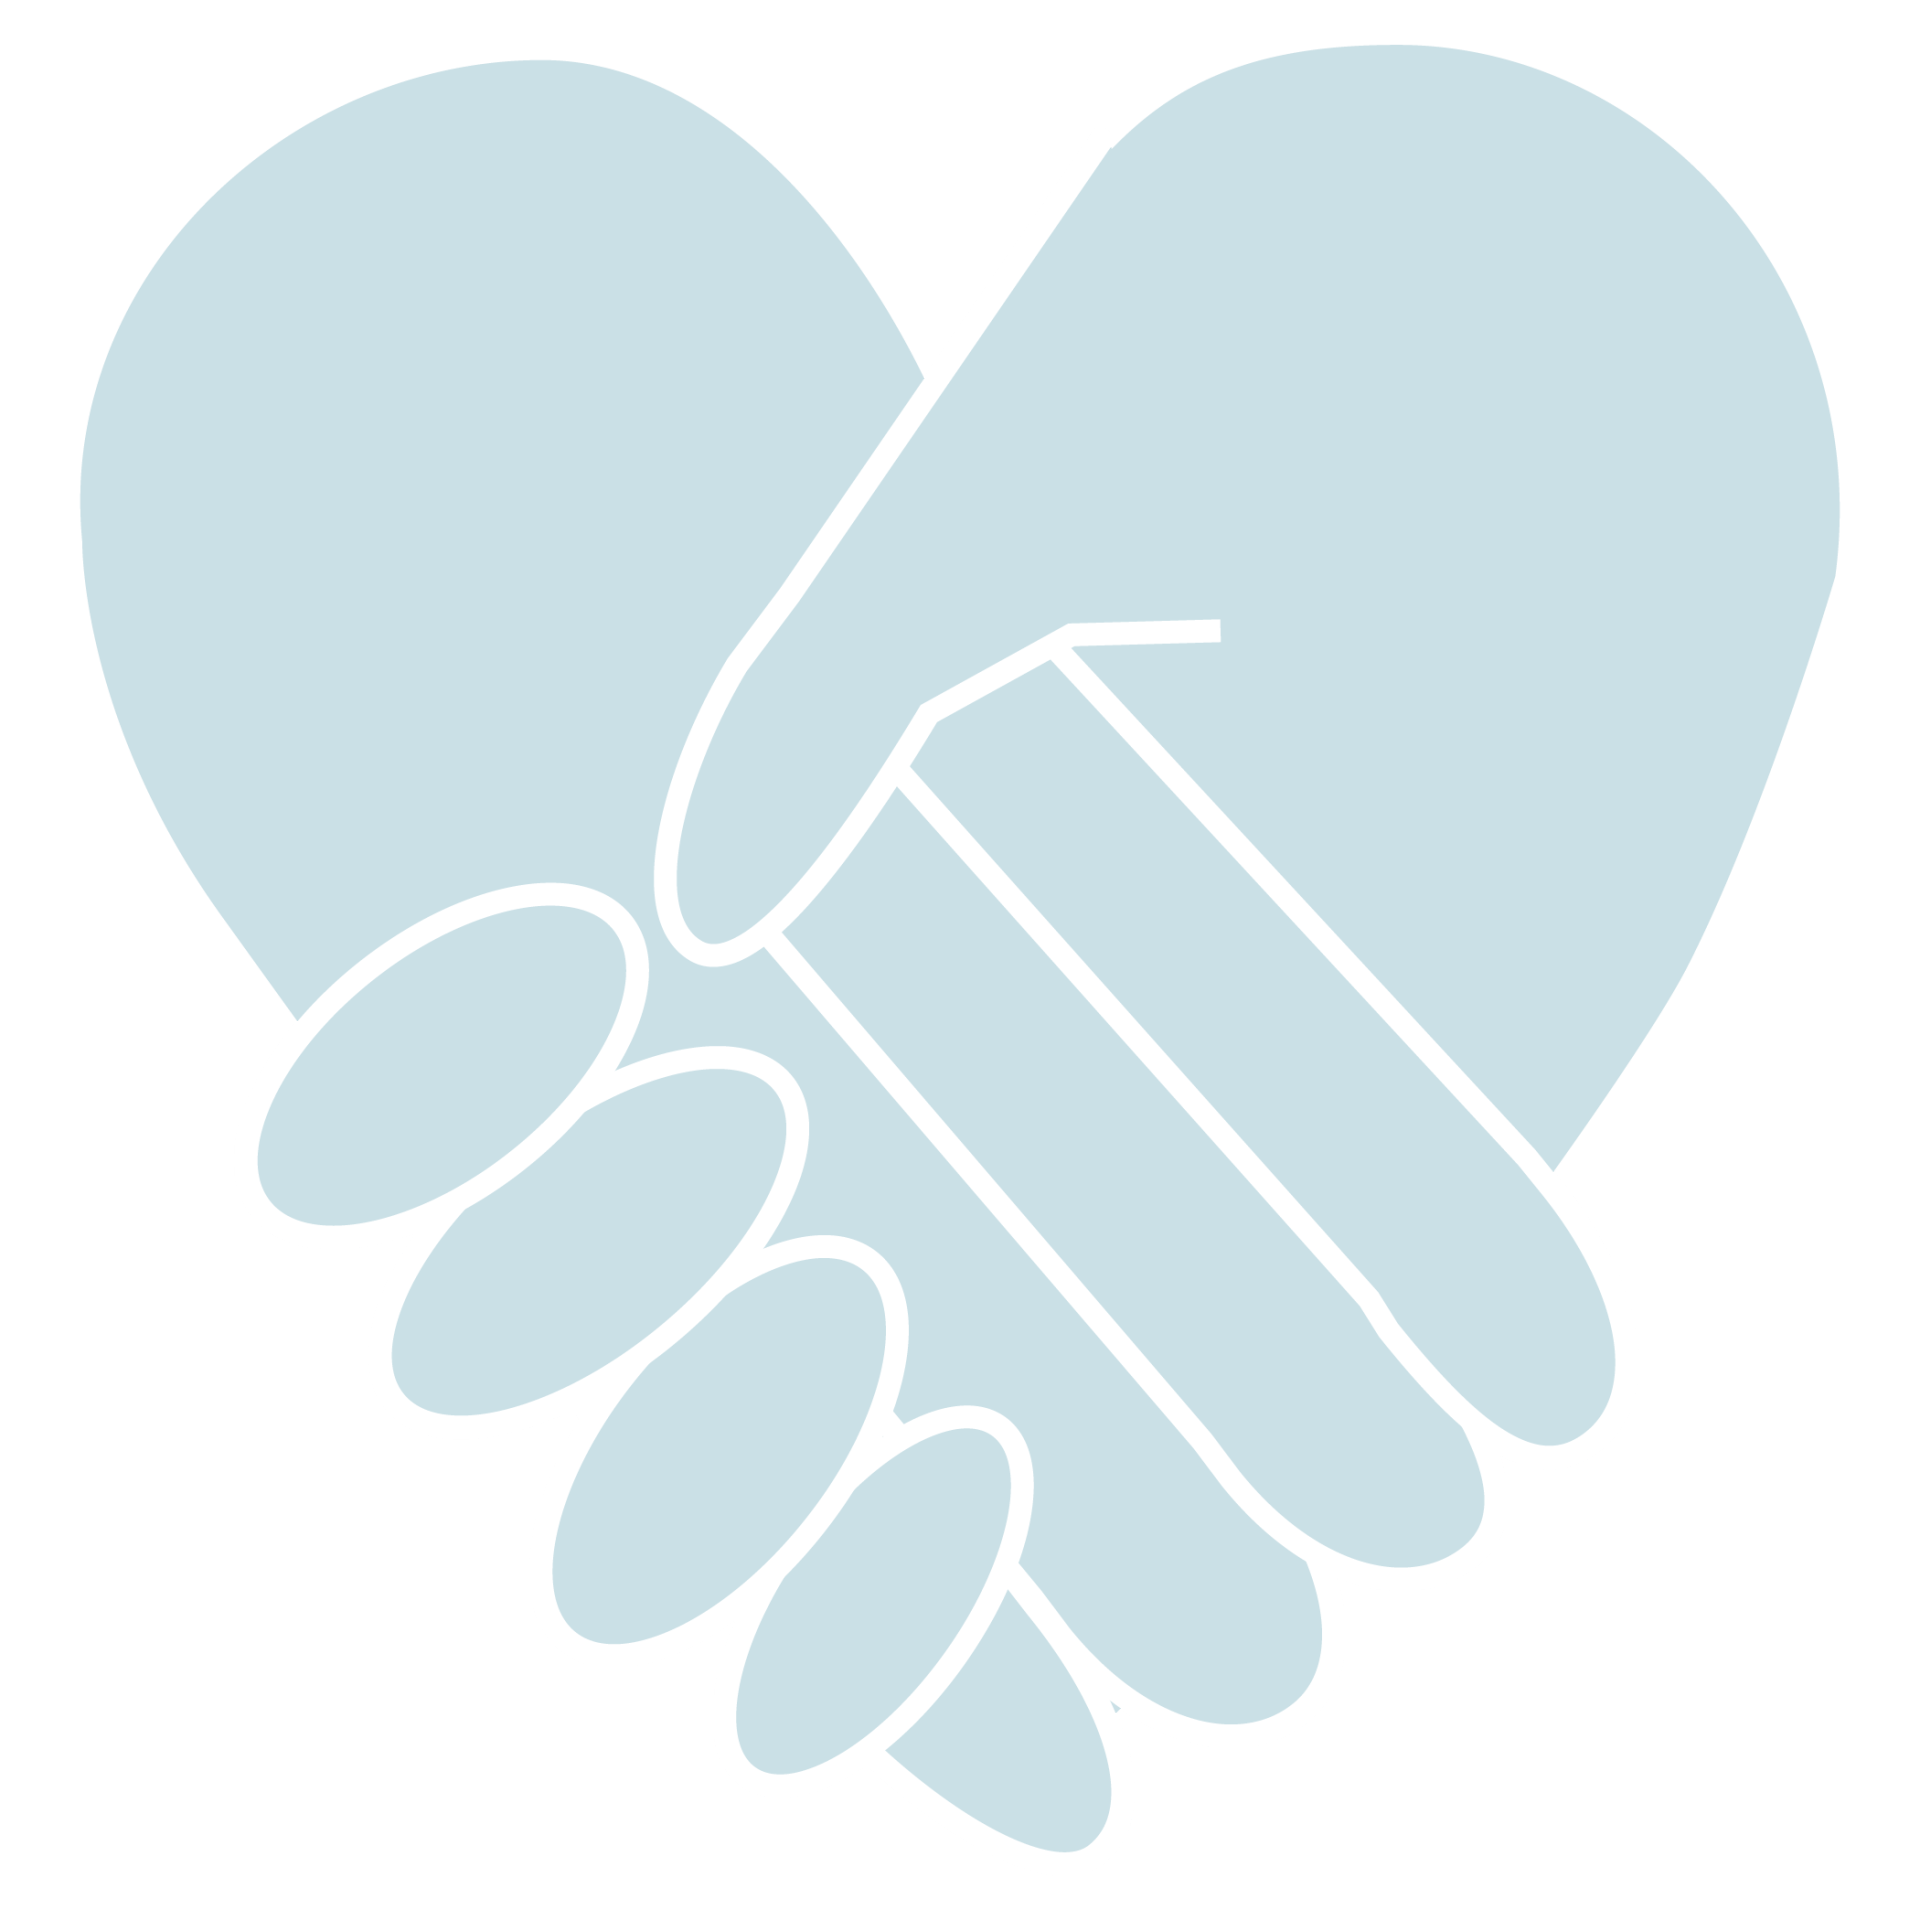 Symbolbild: Ein Herz aus zwei Händen, die für Wertschätzung stehen